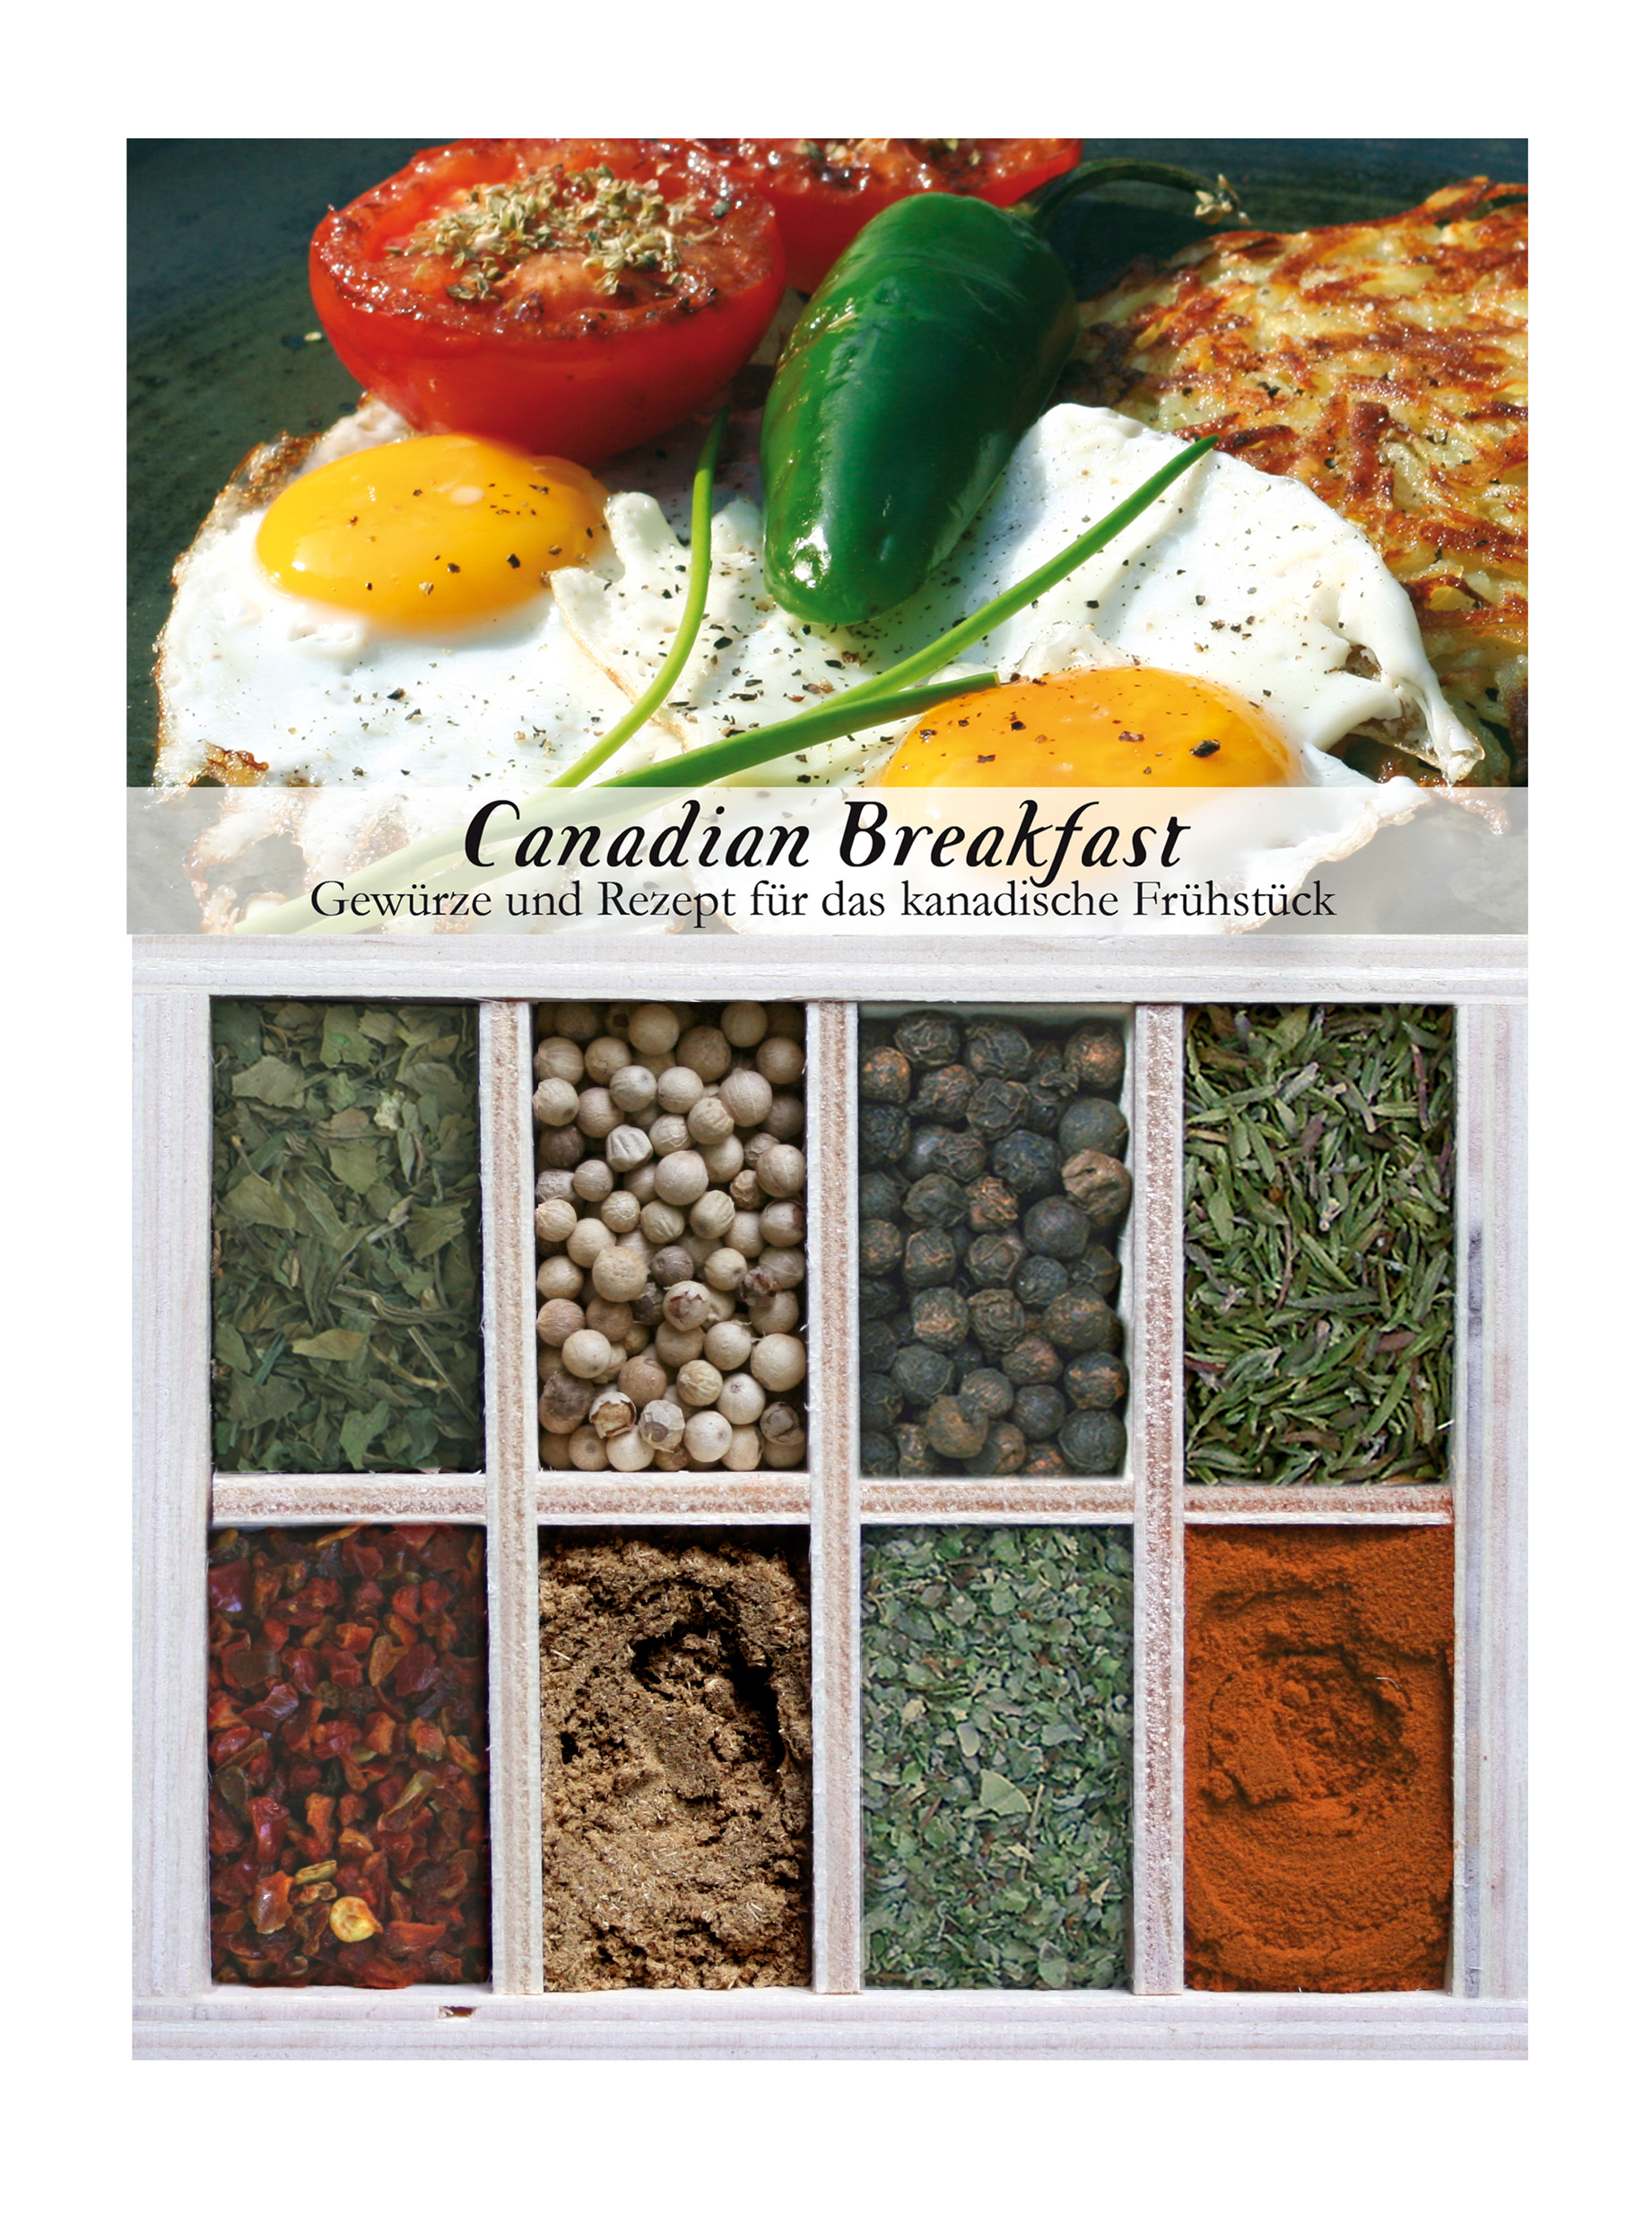 Canadian Breakfast-Gewürzkasten